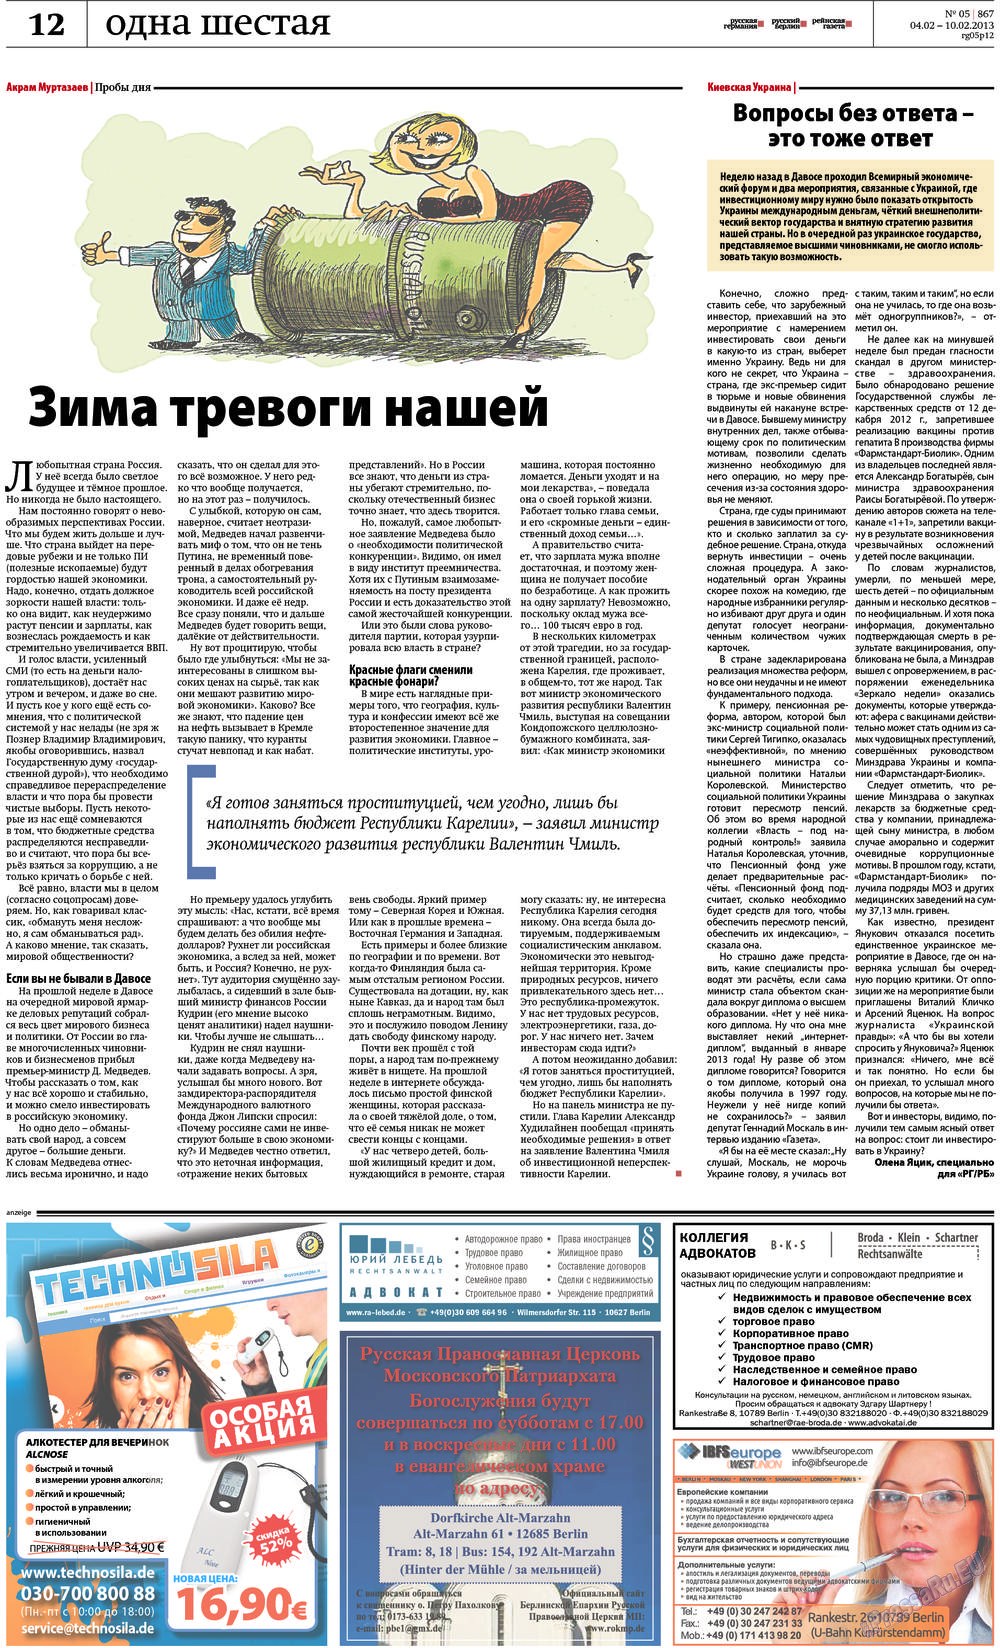 Рейнская газета, газета. 2013 №5 стр.12